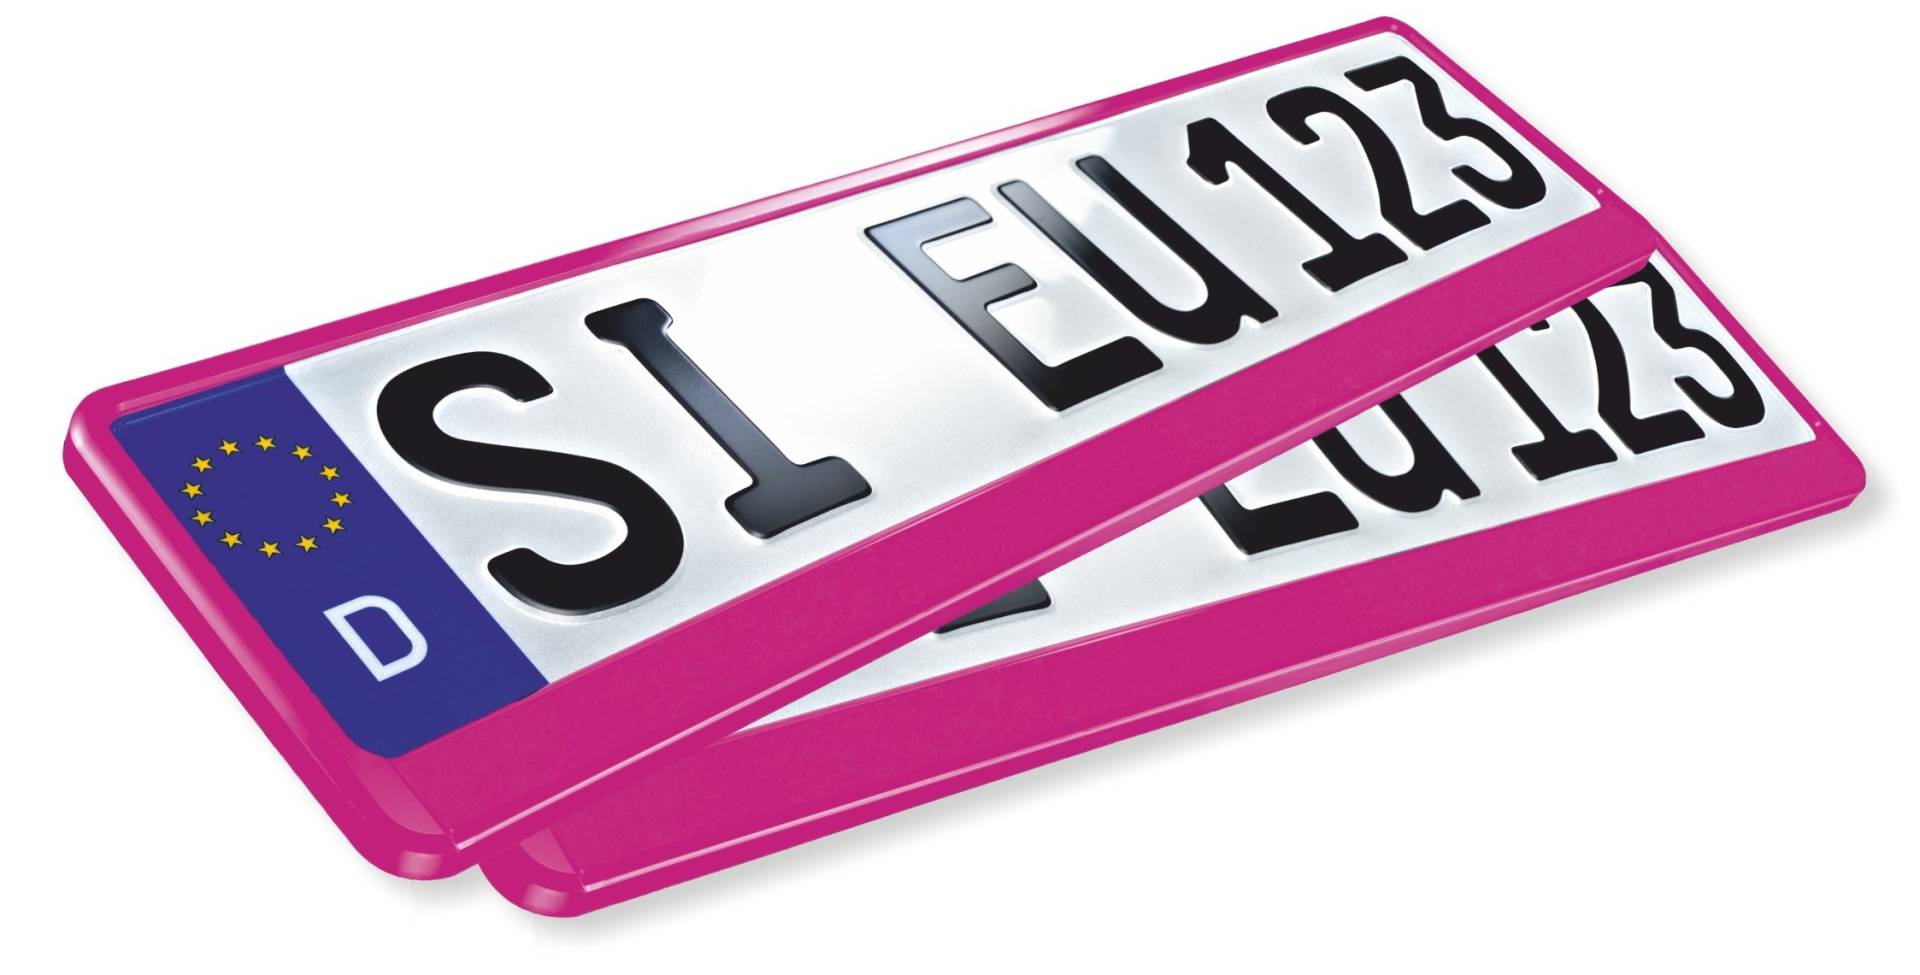 2 x EU Kfz Kennzeichenhalter ERUSTAR pink universal PKW Nummernschildhalter Kennzeichenhalterung 520 x 110 mm der FA. UTSCH von Kennzeichenhalter pink